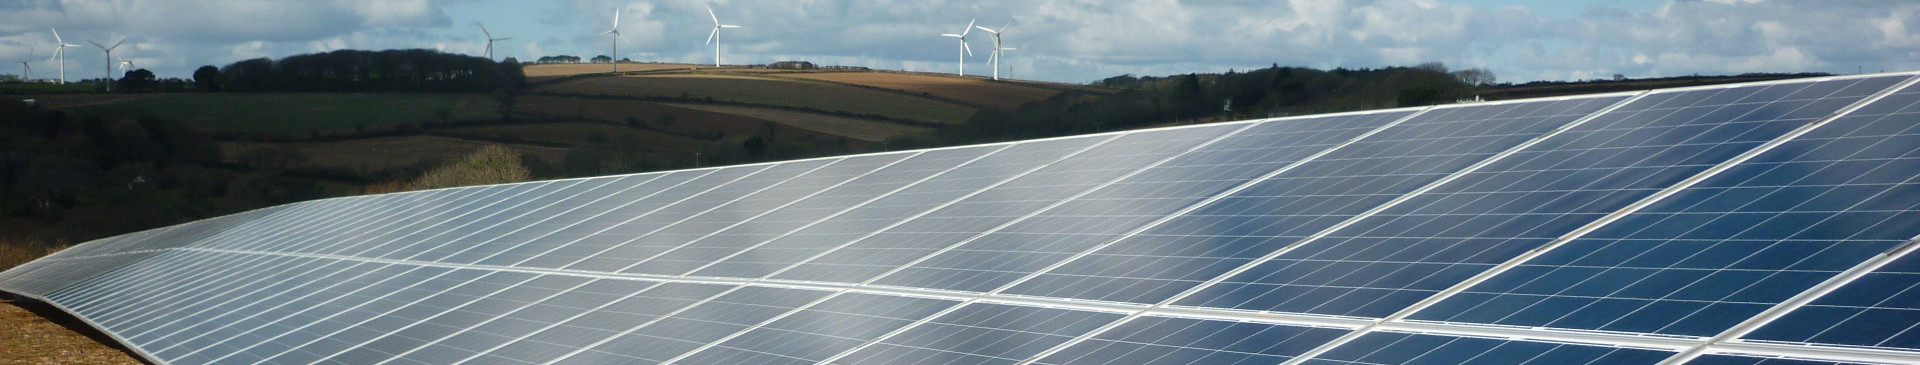 Energia Fotovoltaica Para Sua Propriedade Rural